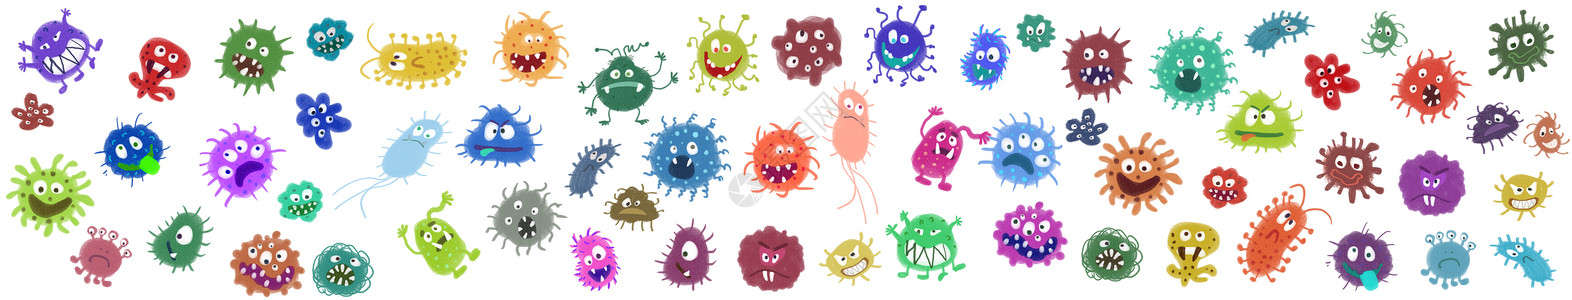 防止细菌细菌病毒元素插画